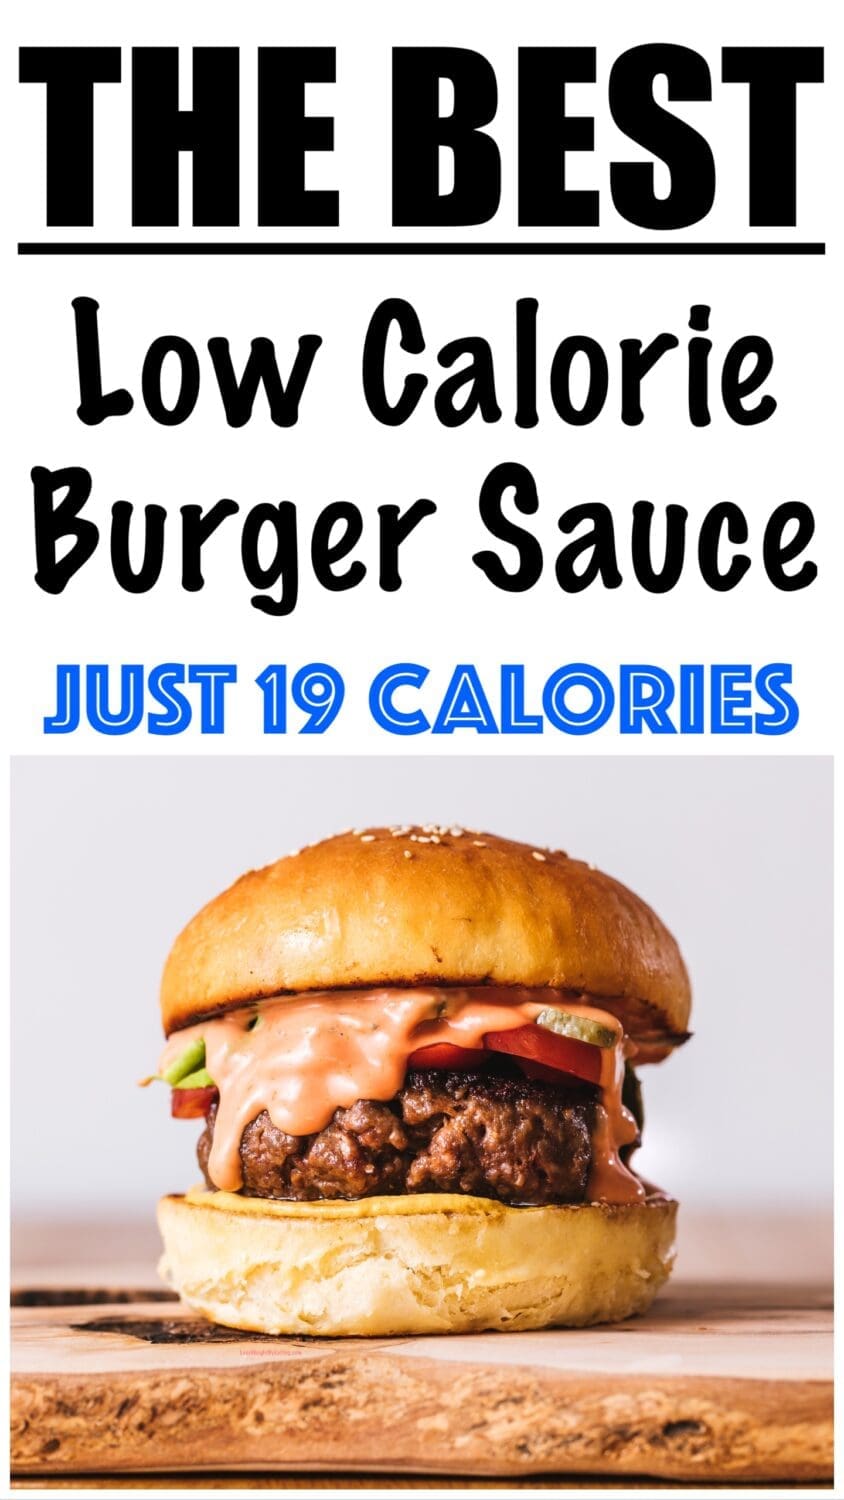 Low Calorie Secret Sauce for Burgers